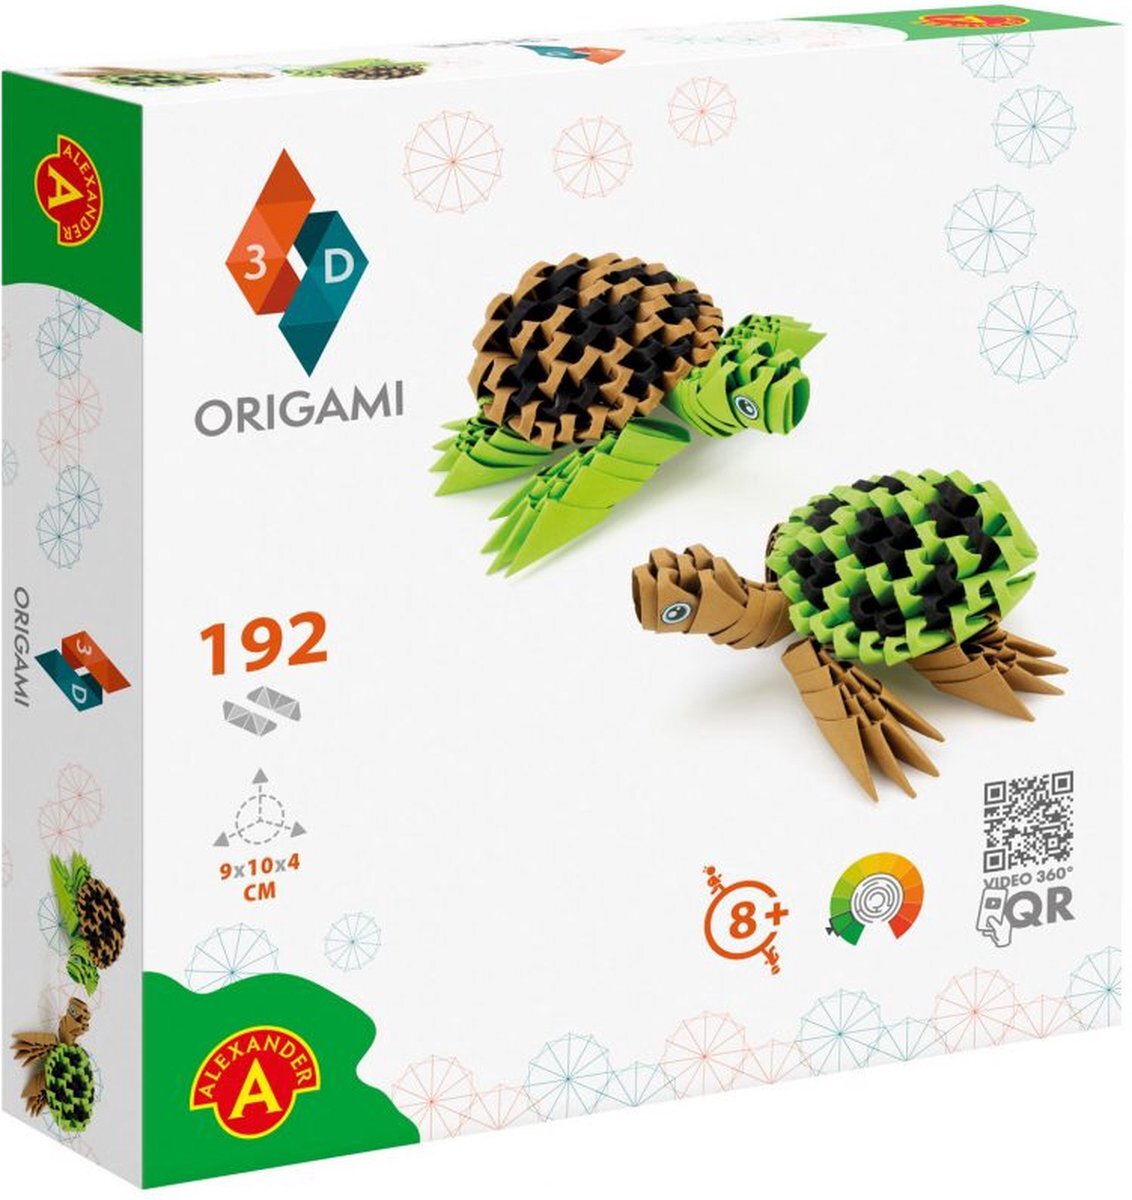 Origami 3D Alexander - ORIGAMI 3D - Turtles - 192pcs